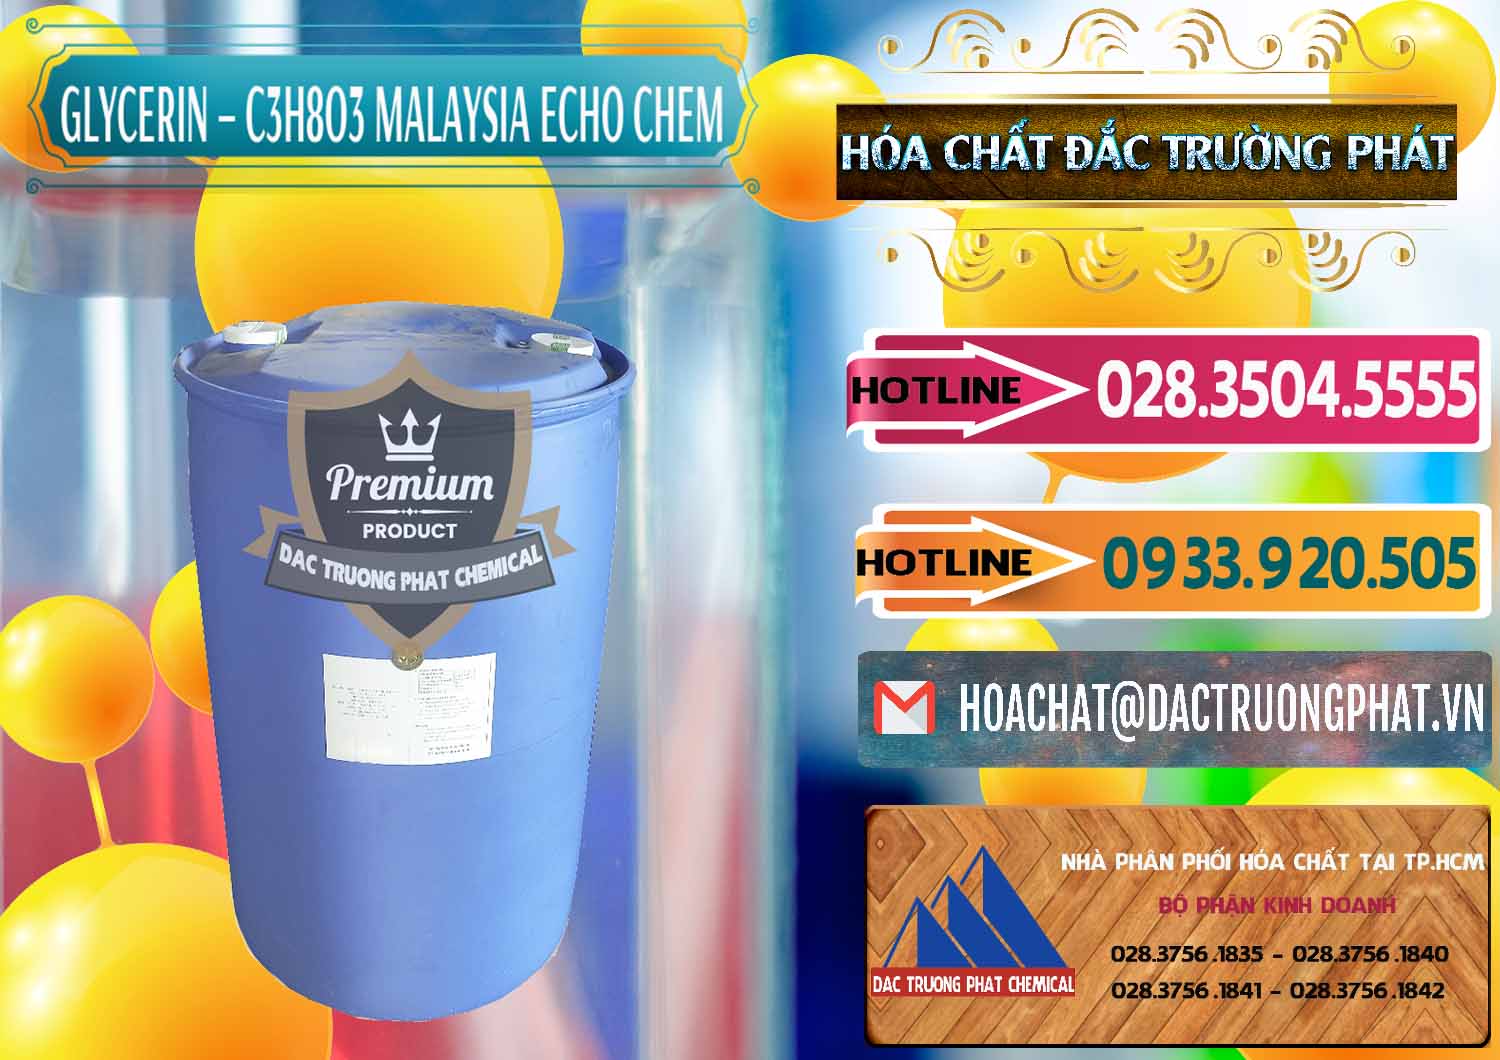 Công ty cung ứng và bán C3H8O3 - Glycerin 99.7% Echo Chem Malaysia - 0273 - Công ty chuyên cung cấp _ kinh doanh hóa chất tại TP.HCM - dactruongphat.vn